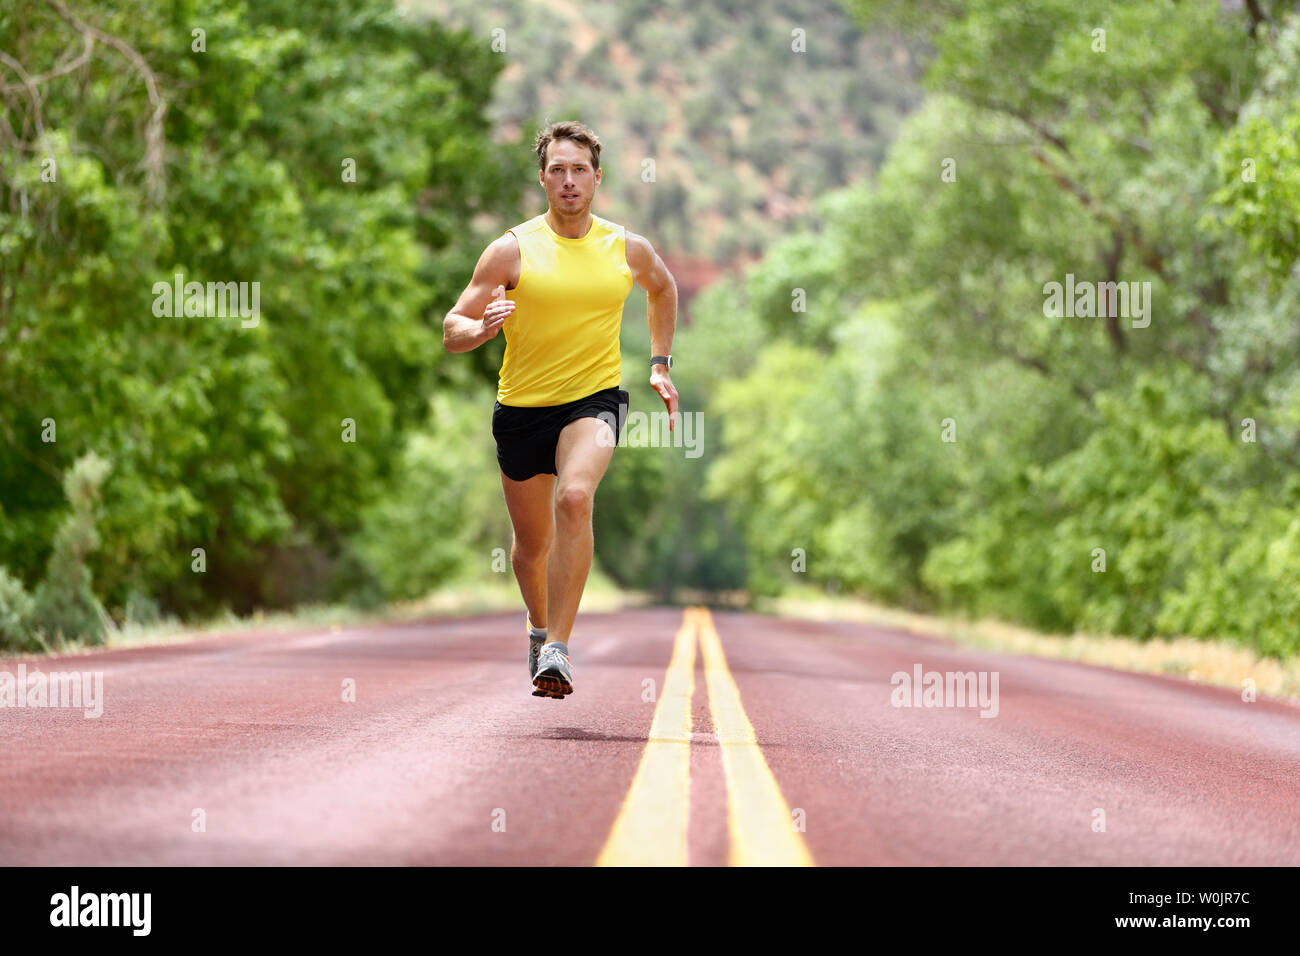 Hombre corriendo runner sprints de fitness y salud. Atleta Masculino en  sprint ejecutar llevar zapatillas deportivas y shorts en entrenar para la  maratón. Longitud de cuerpo completo ver sprinter corriendo hacia la